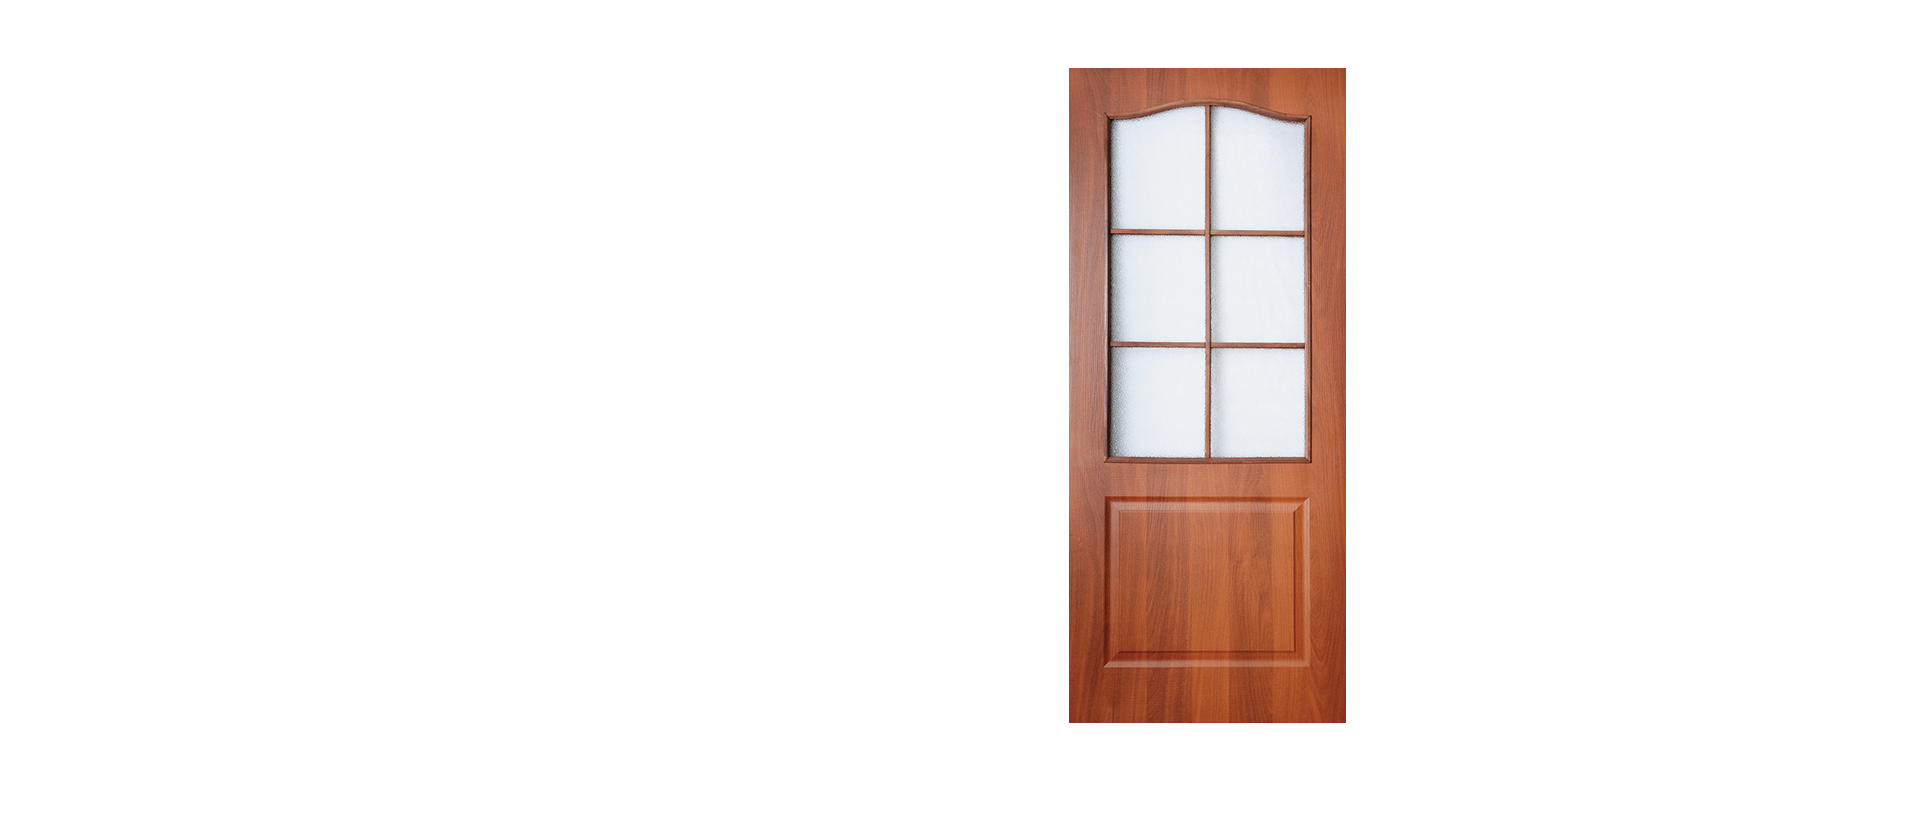 Полотно двери ламинированное глухое со стеклом Терри Classique Итальянский орех 900*2000 мм